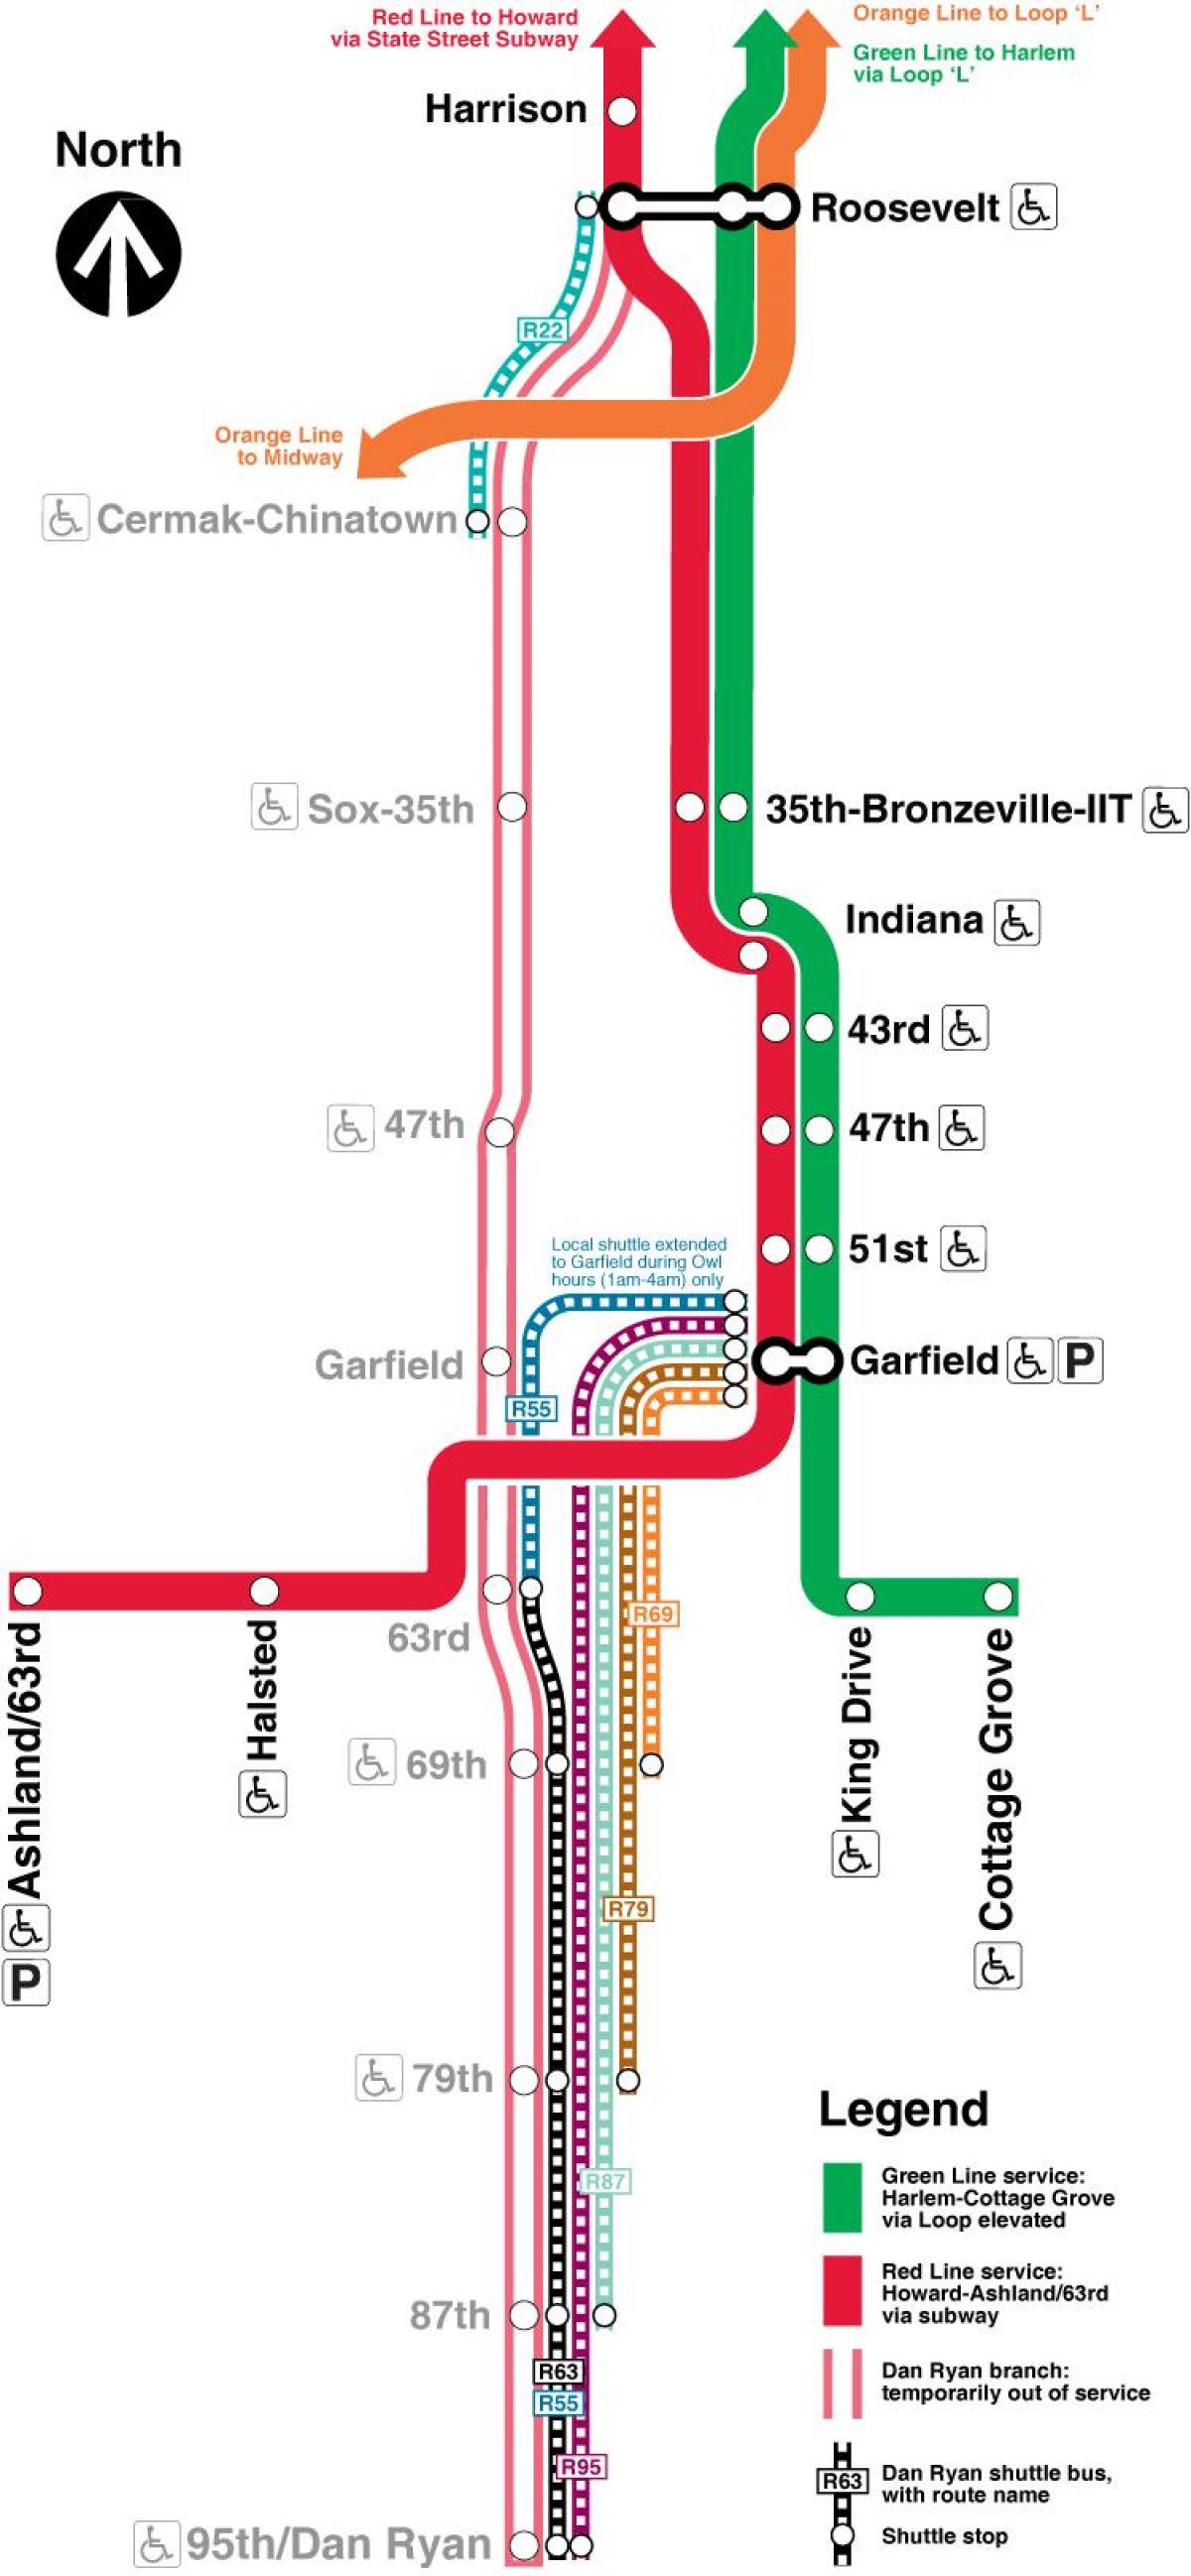 Чикаго метрото мапата црвена линија